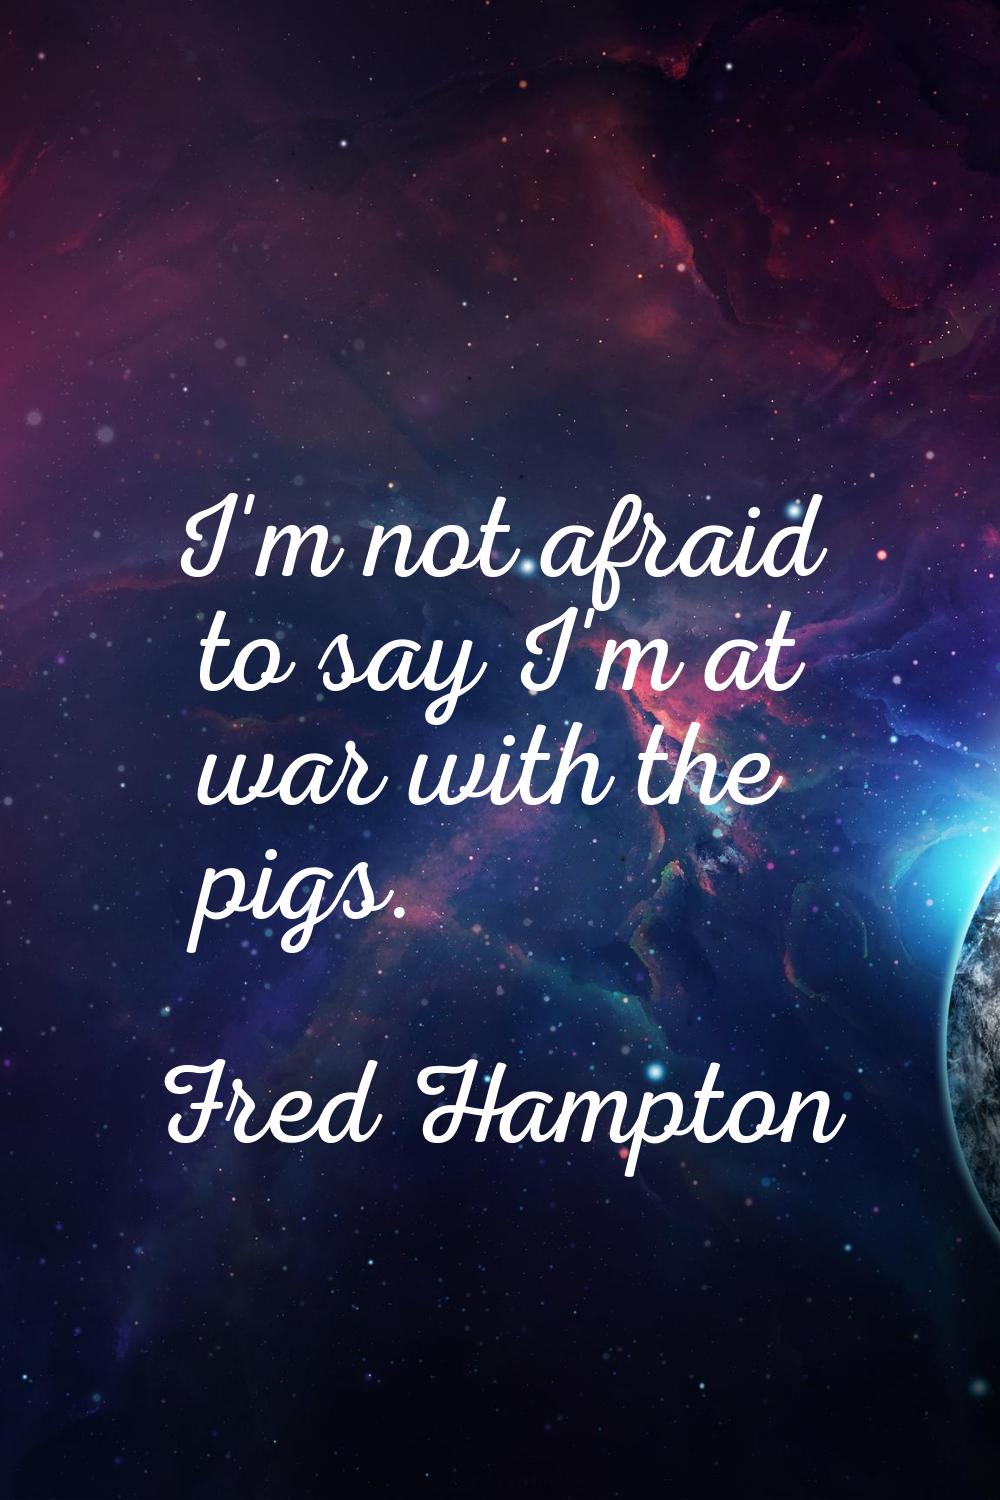 I'm not afraid to say I'm at war with the pigs.